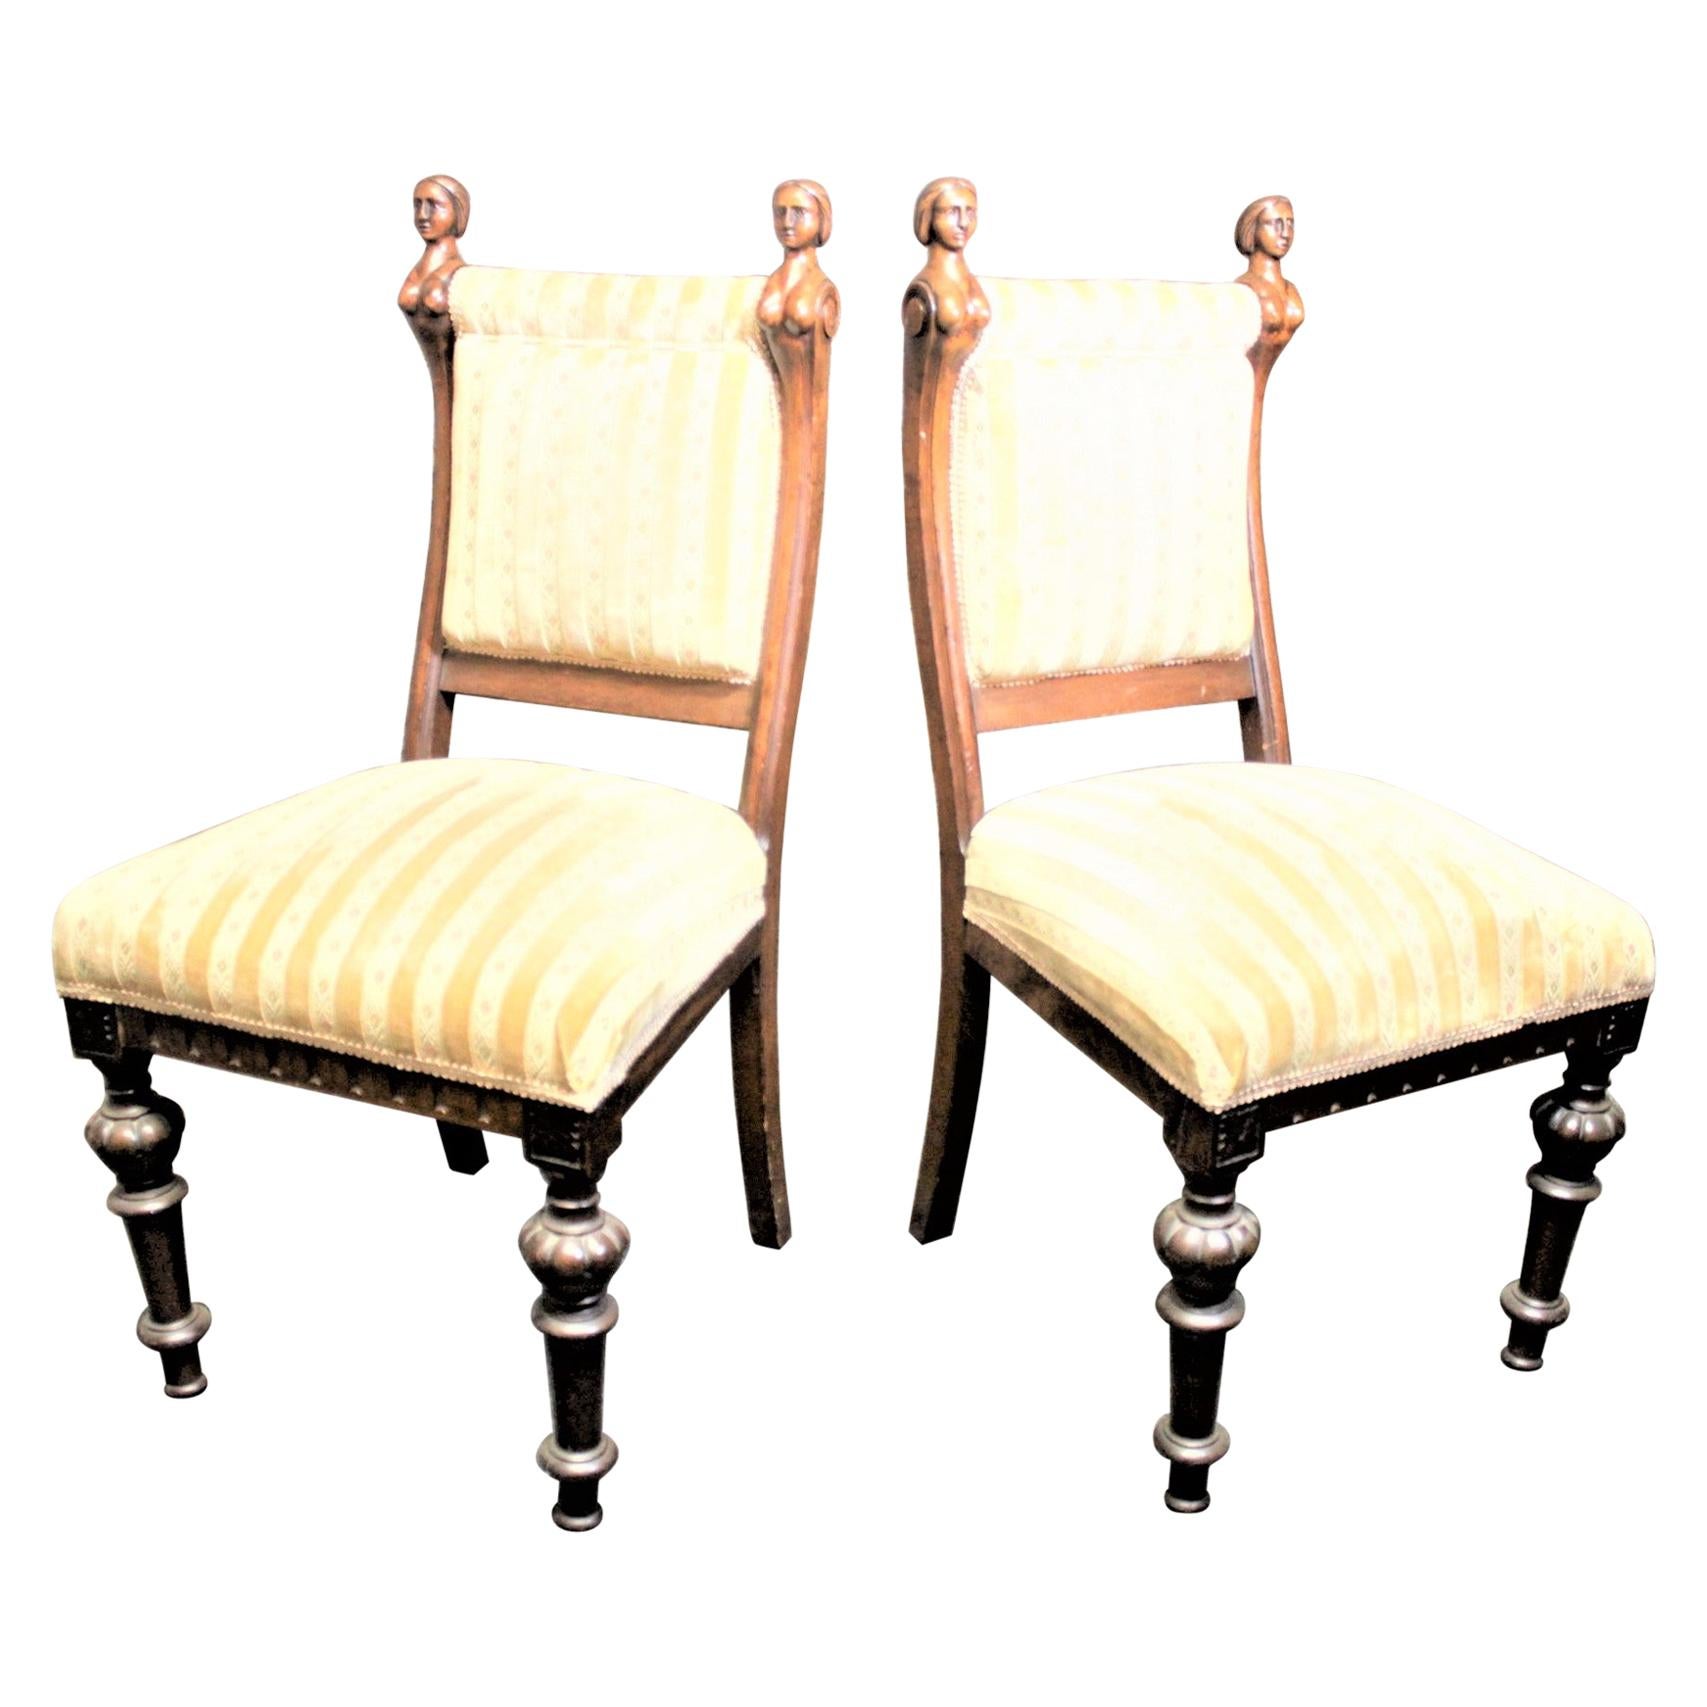 Paire d'anciennes chaises de salon américaines en noyer sculpté avec accents féminins érotiques